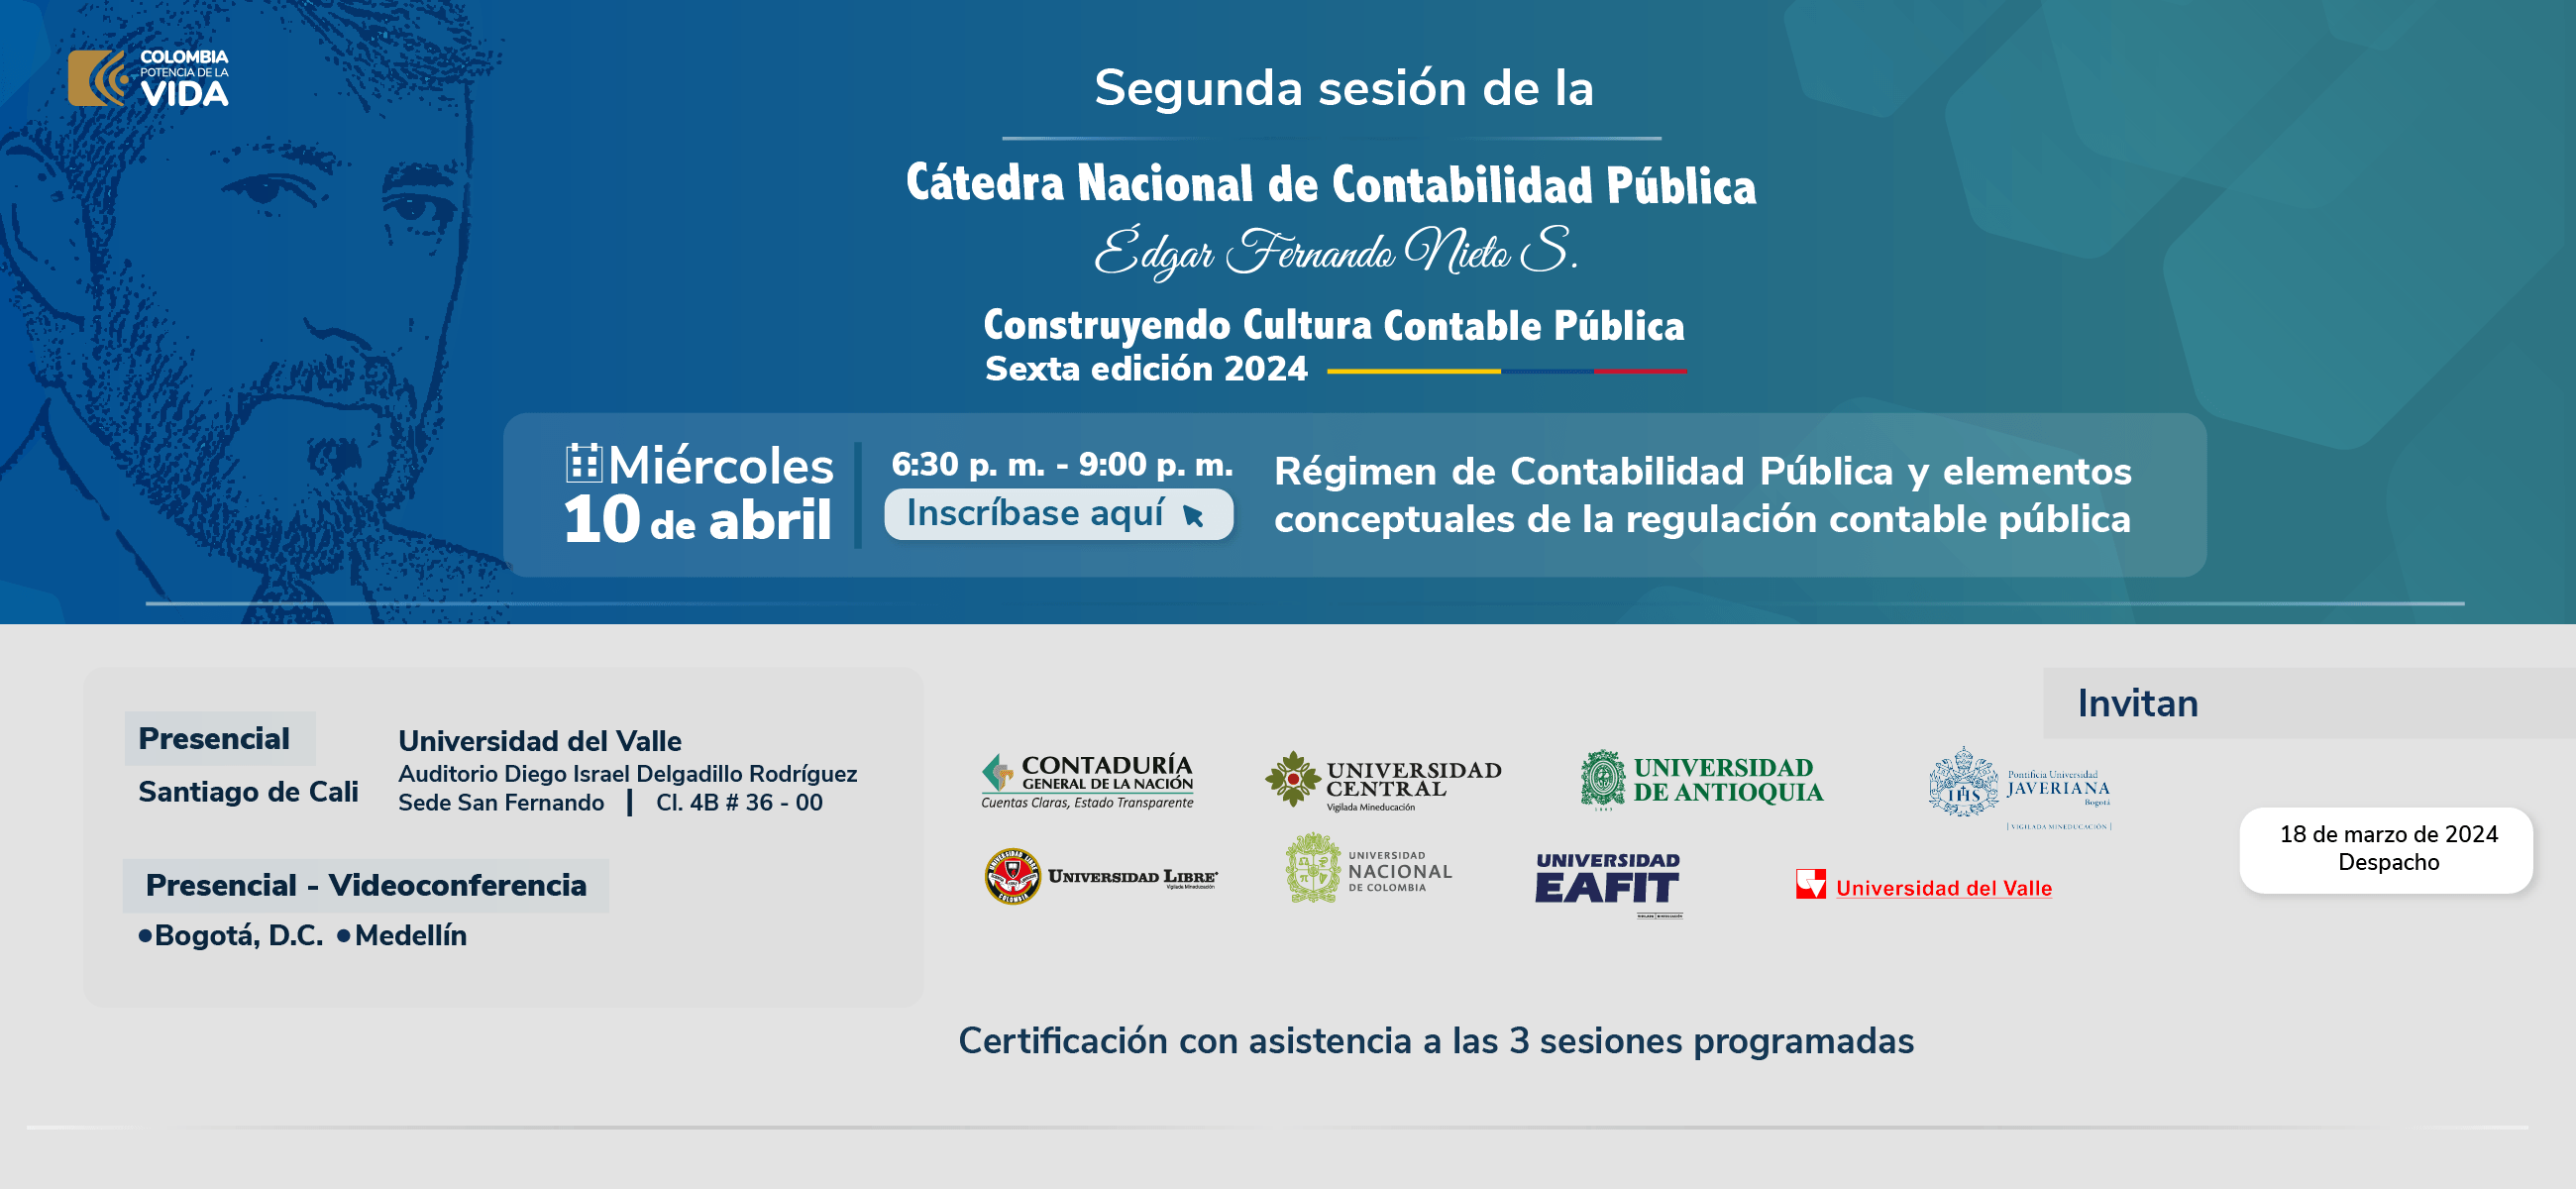 Participe en la segunda sesión de la Cátedra Nacional de Contabilidad Pública Édgar Fernando Nieto Sánchez